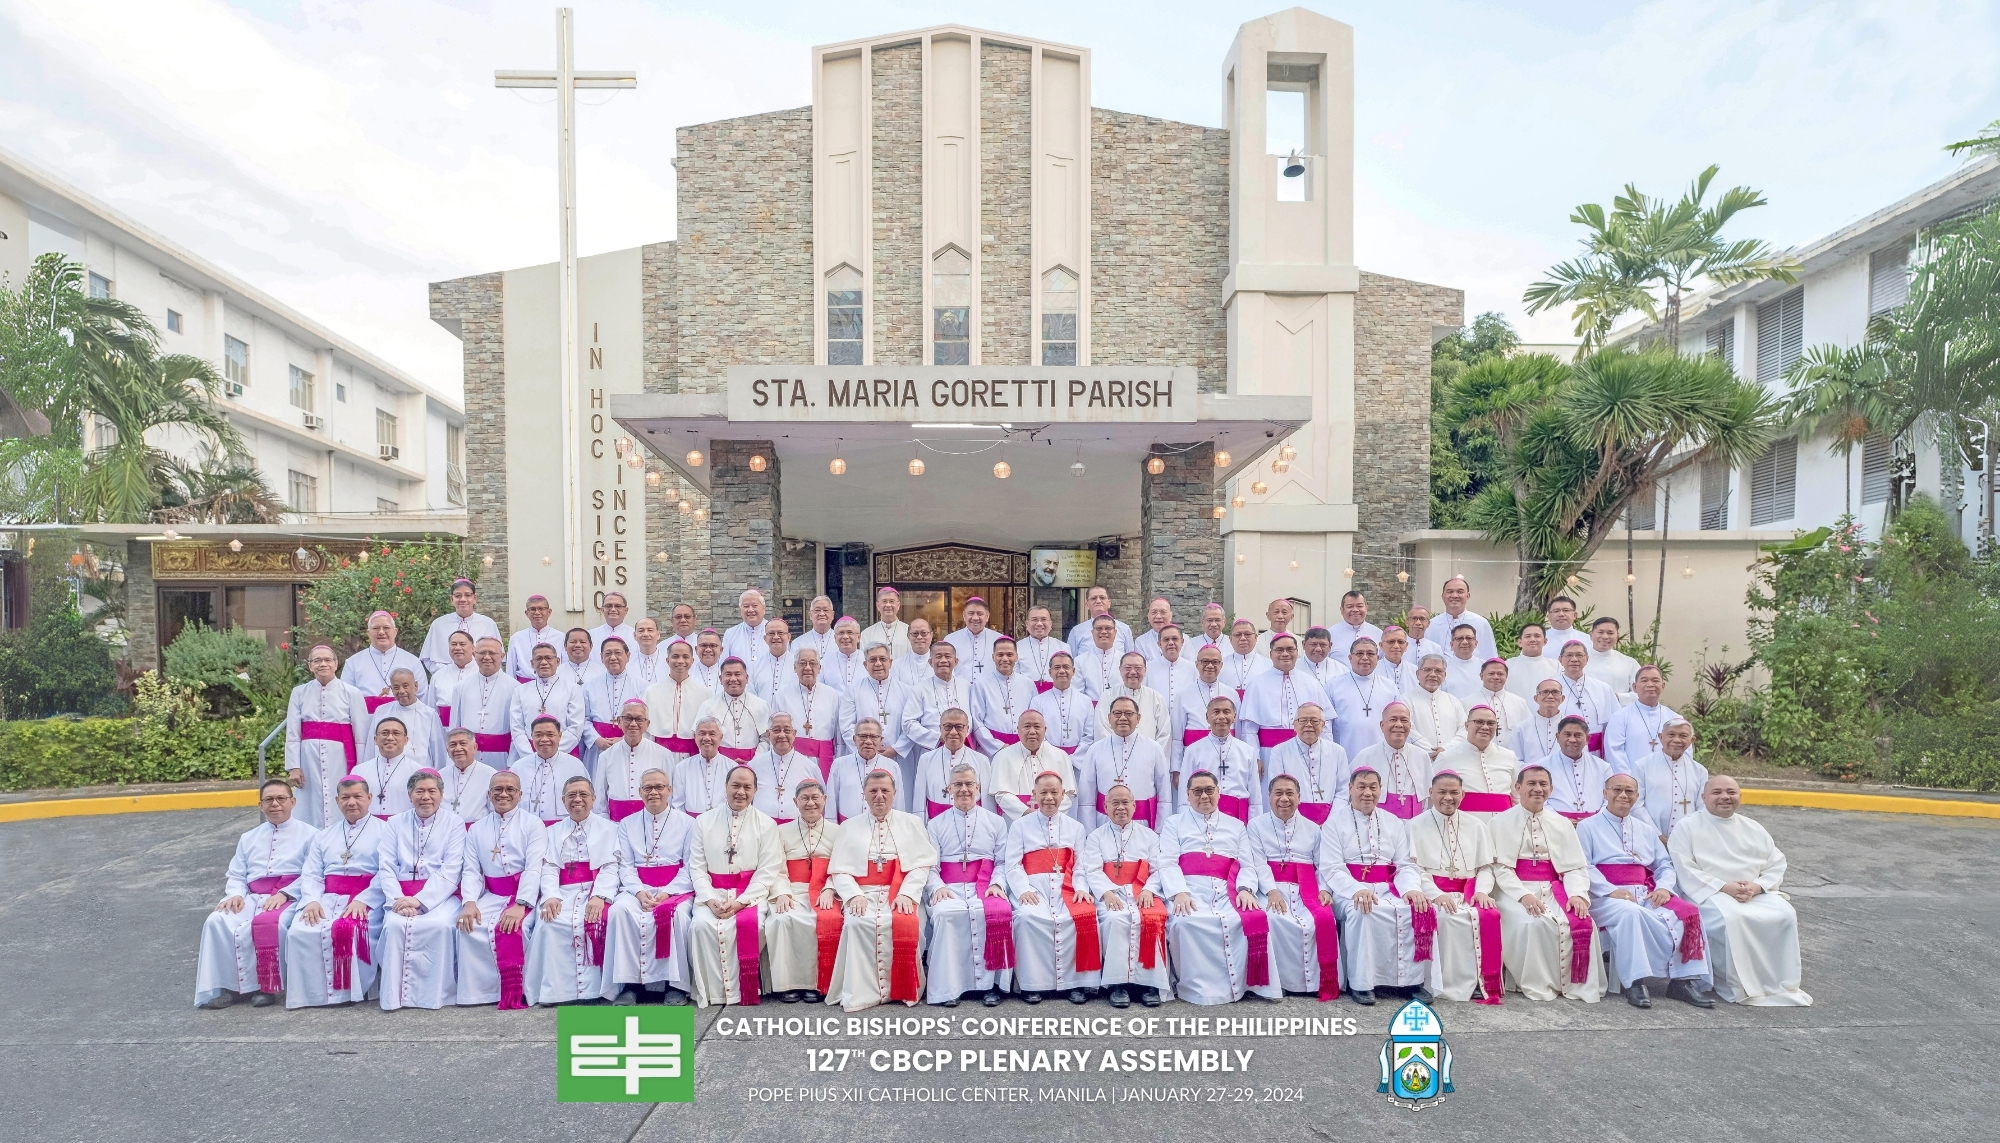 127th CBCP Plenary Assembly last January 27-29, 2024 held at Pope Pius XII Catholic Center